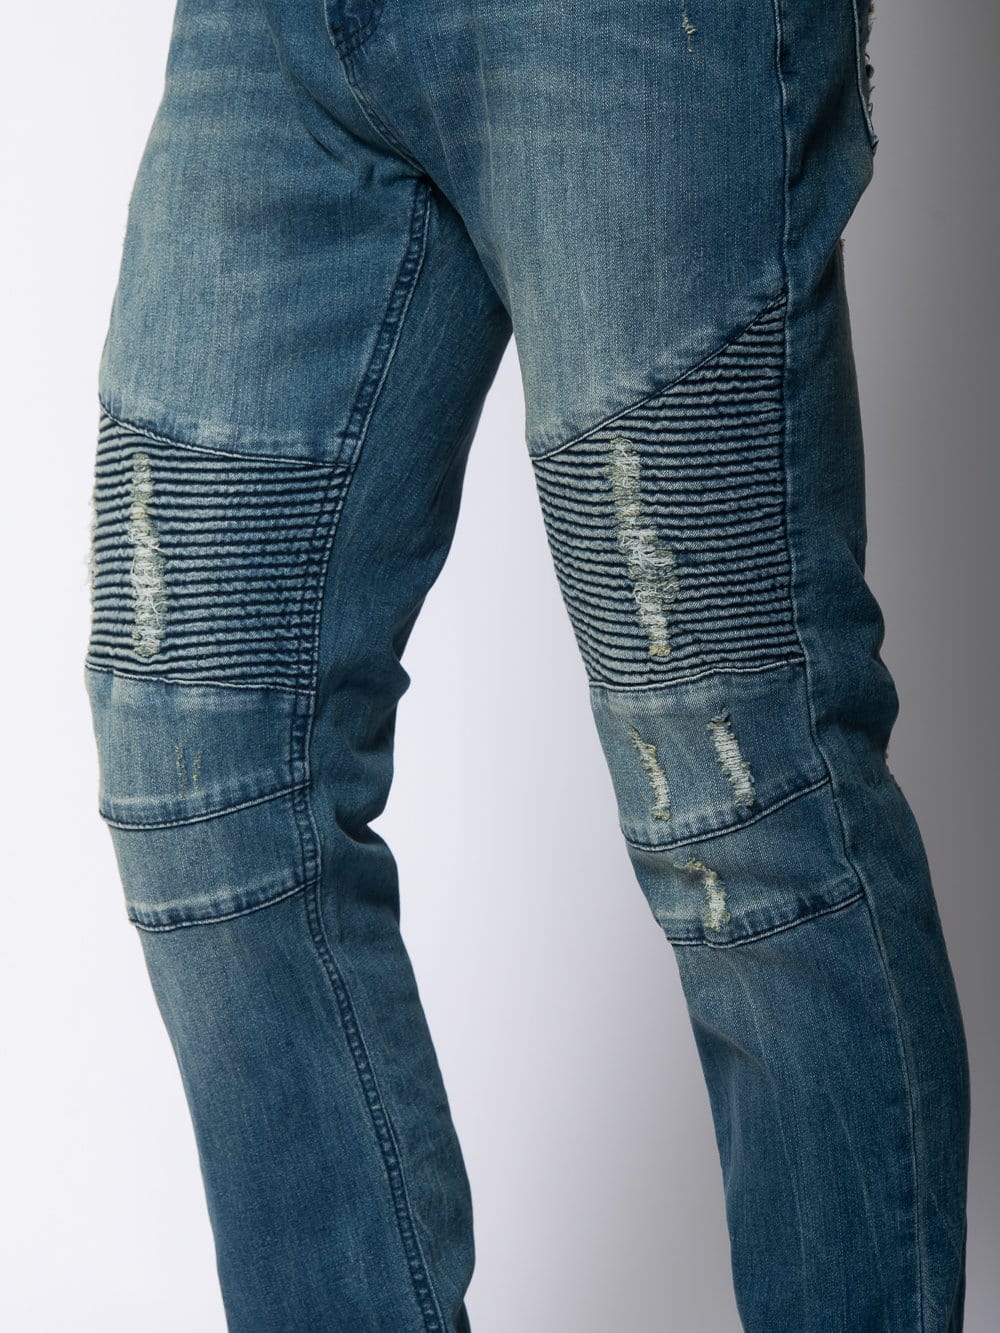 moto jeanswear